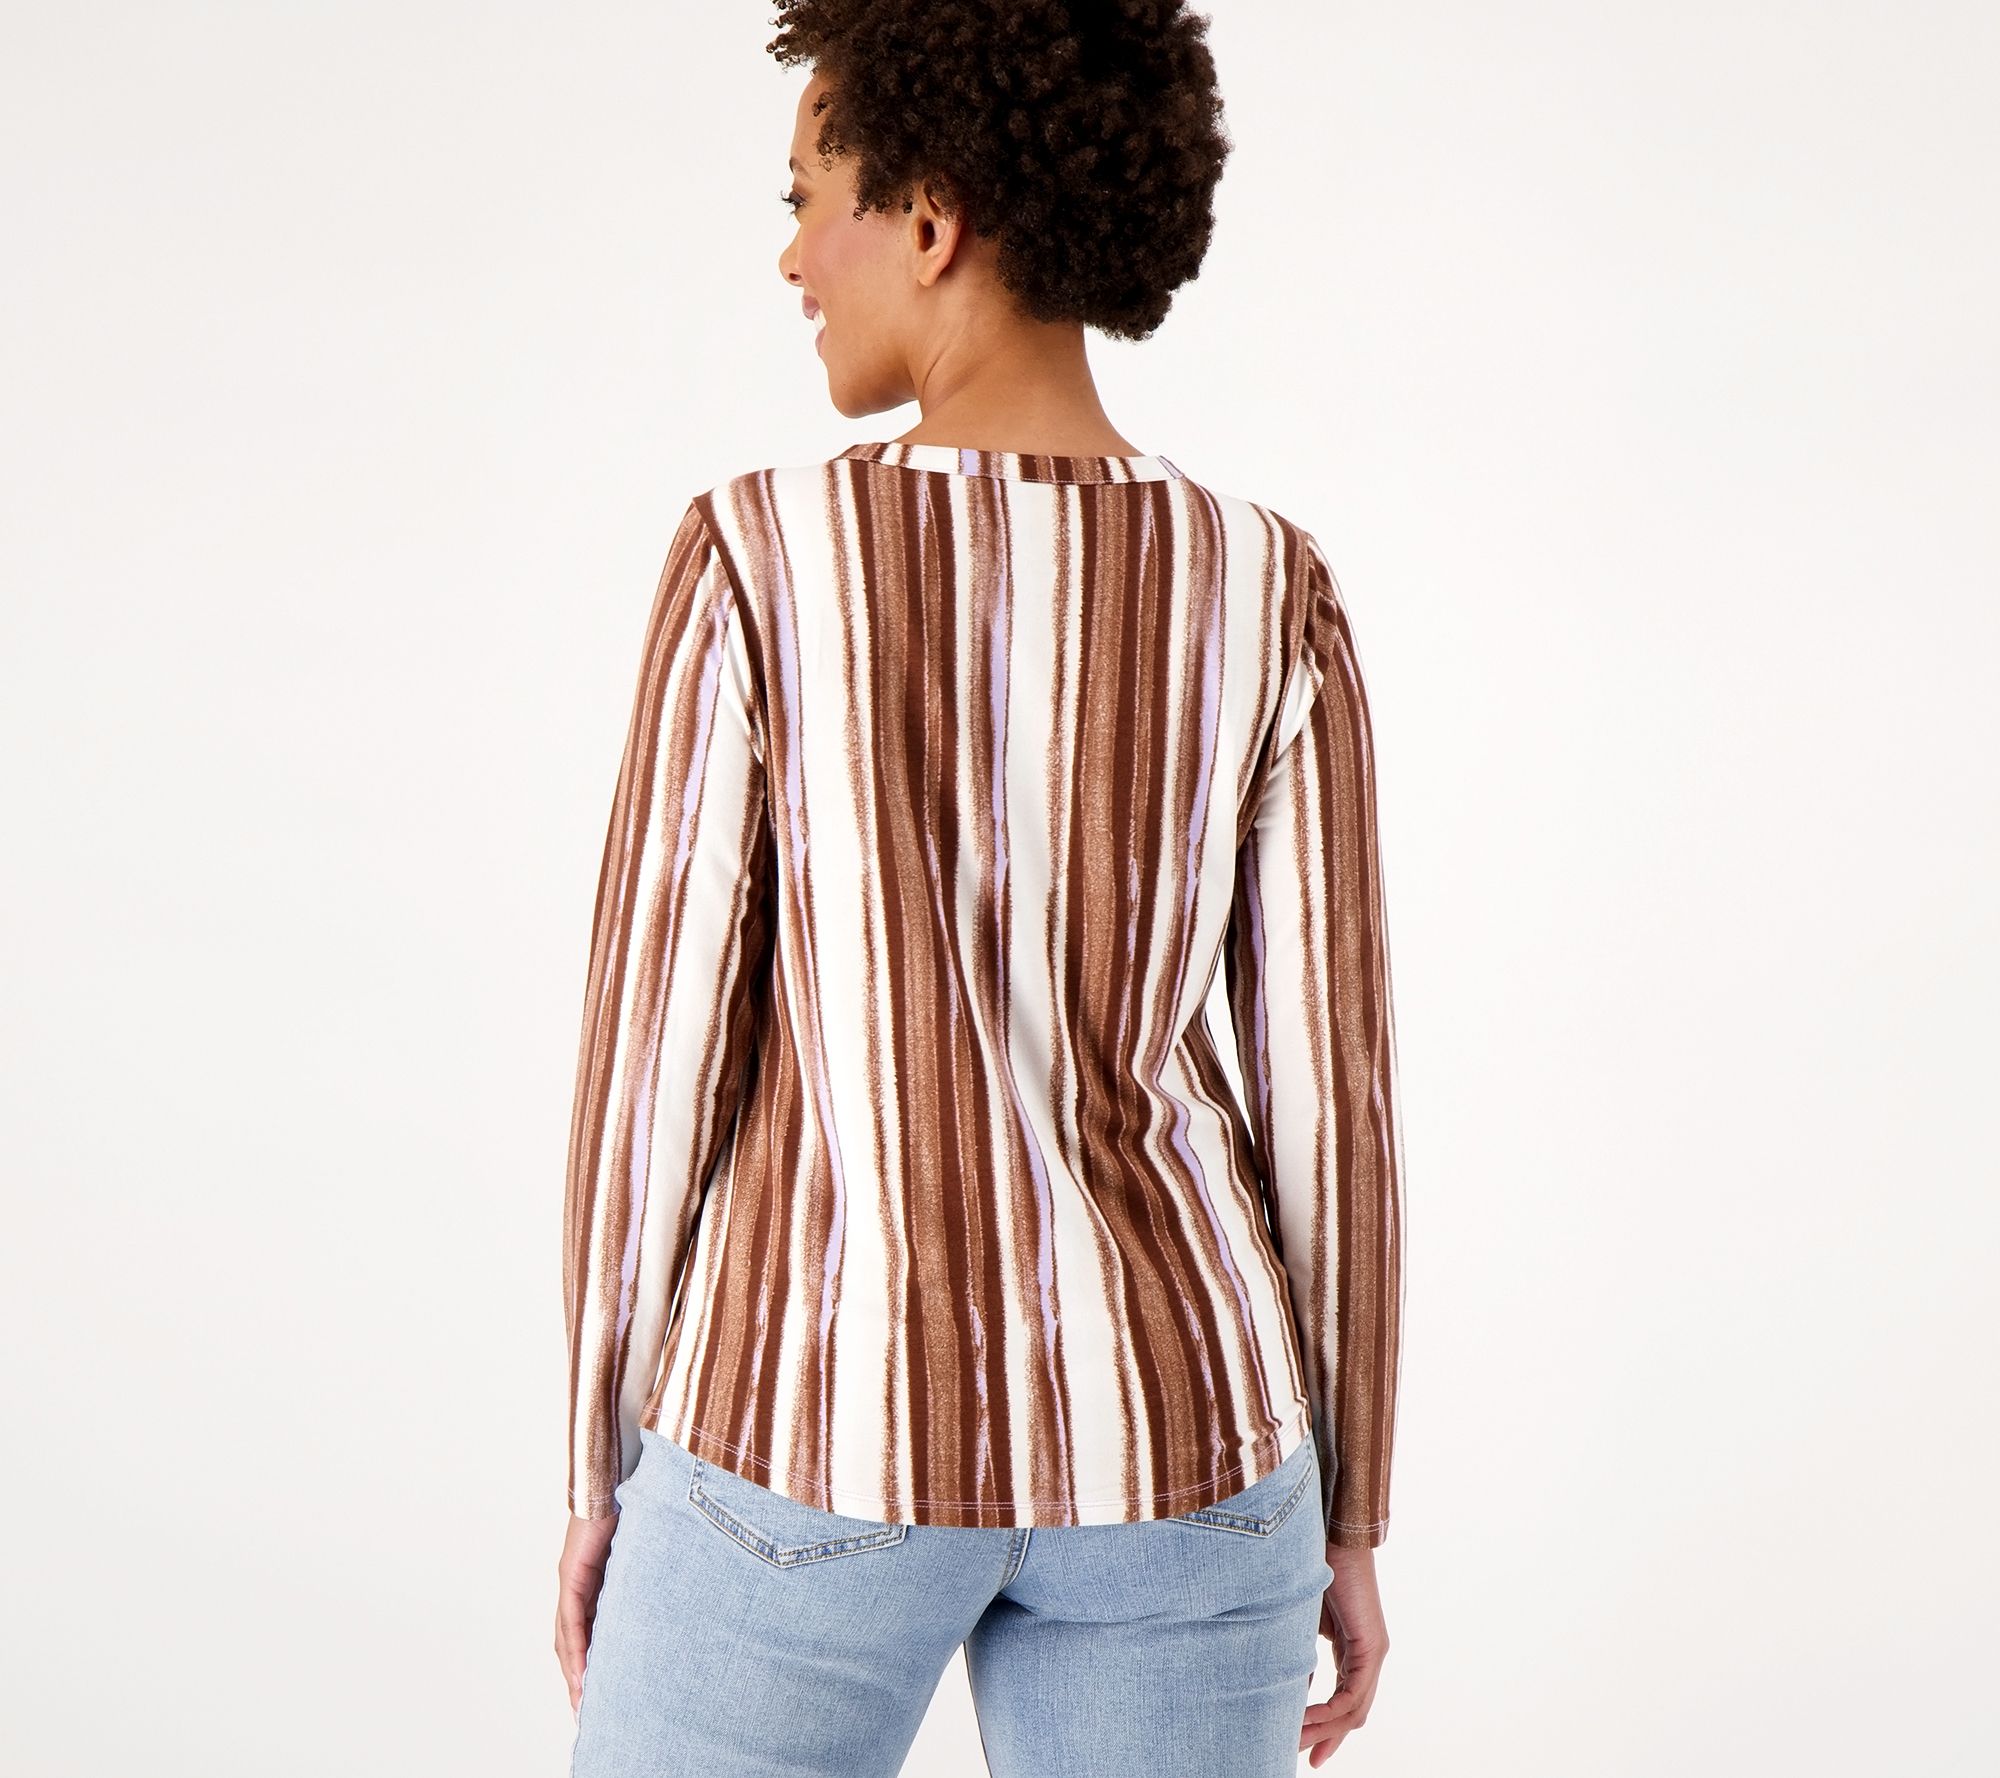 AnyBody Cozy Knit Striped Long Sleeve Shirt - QVC.com